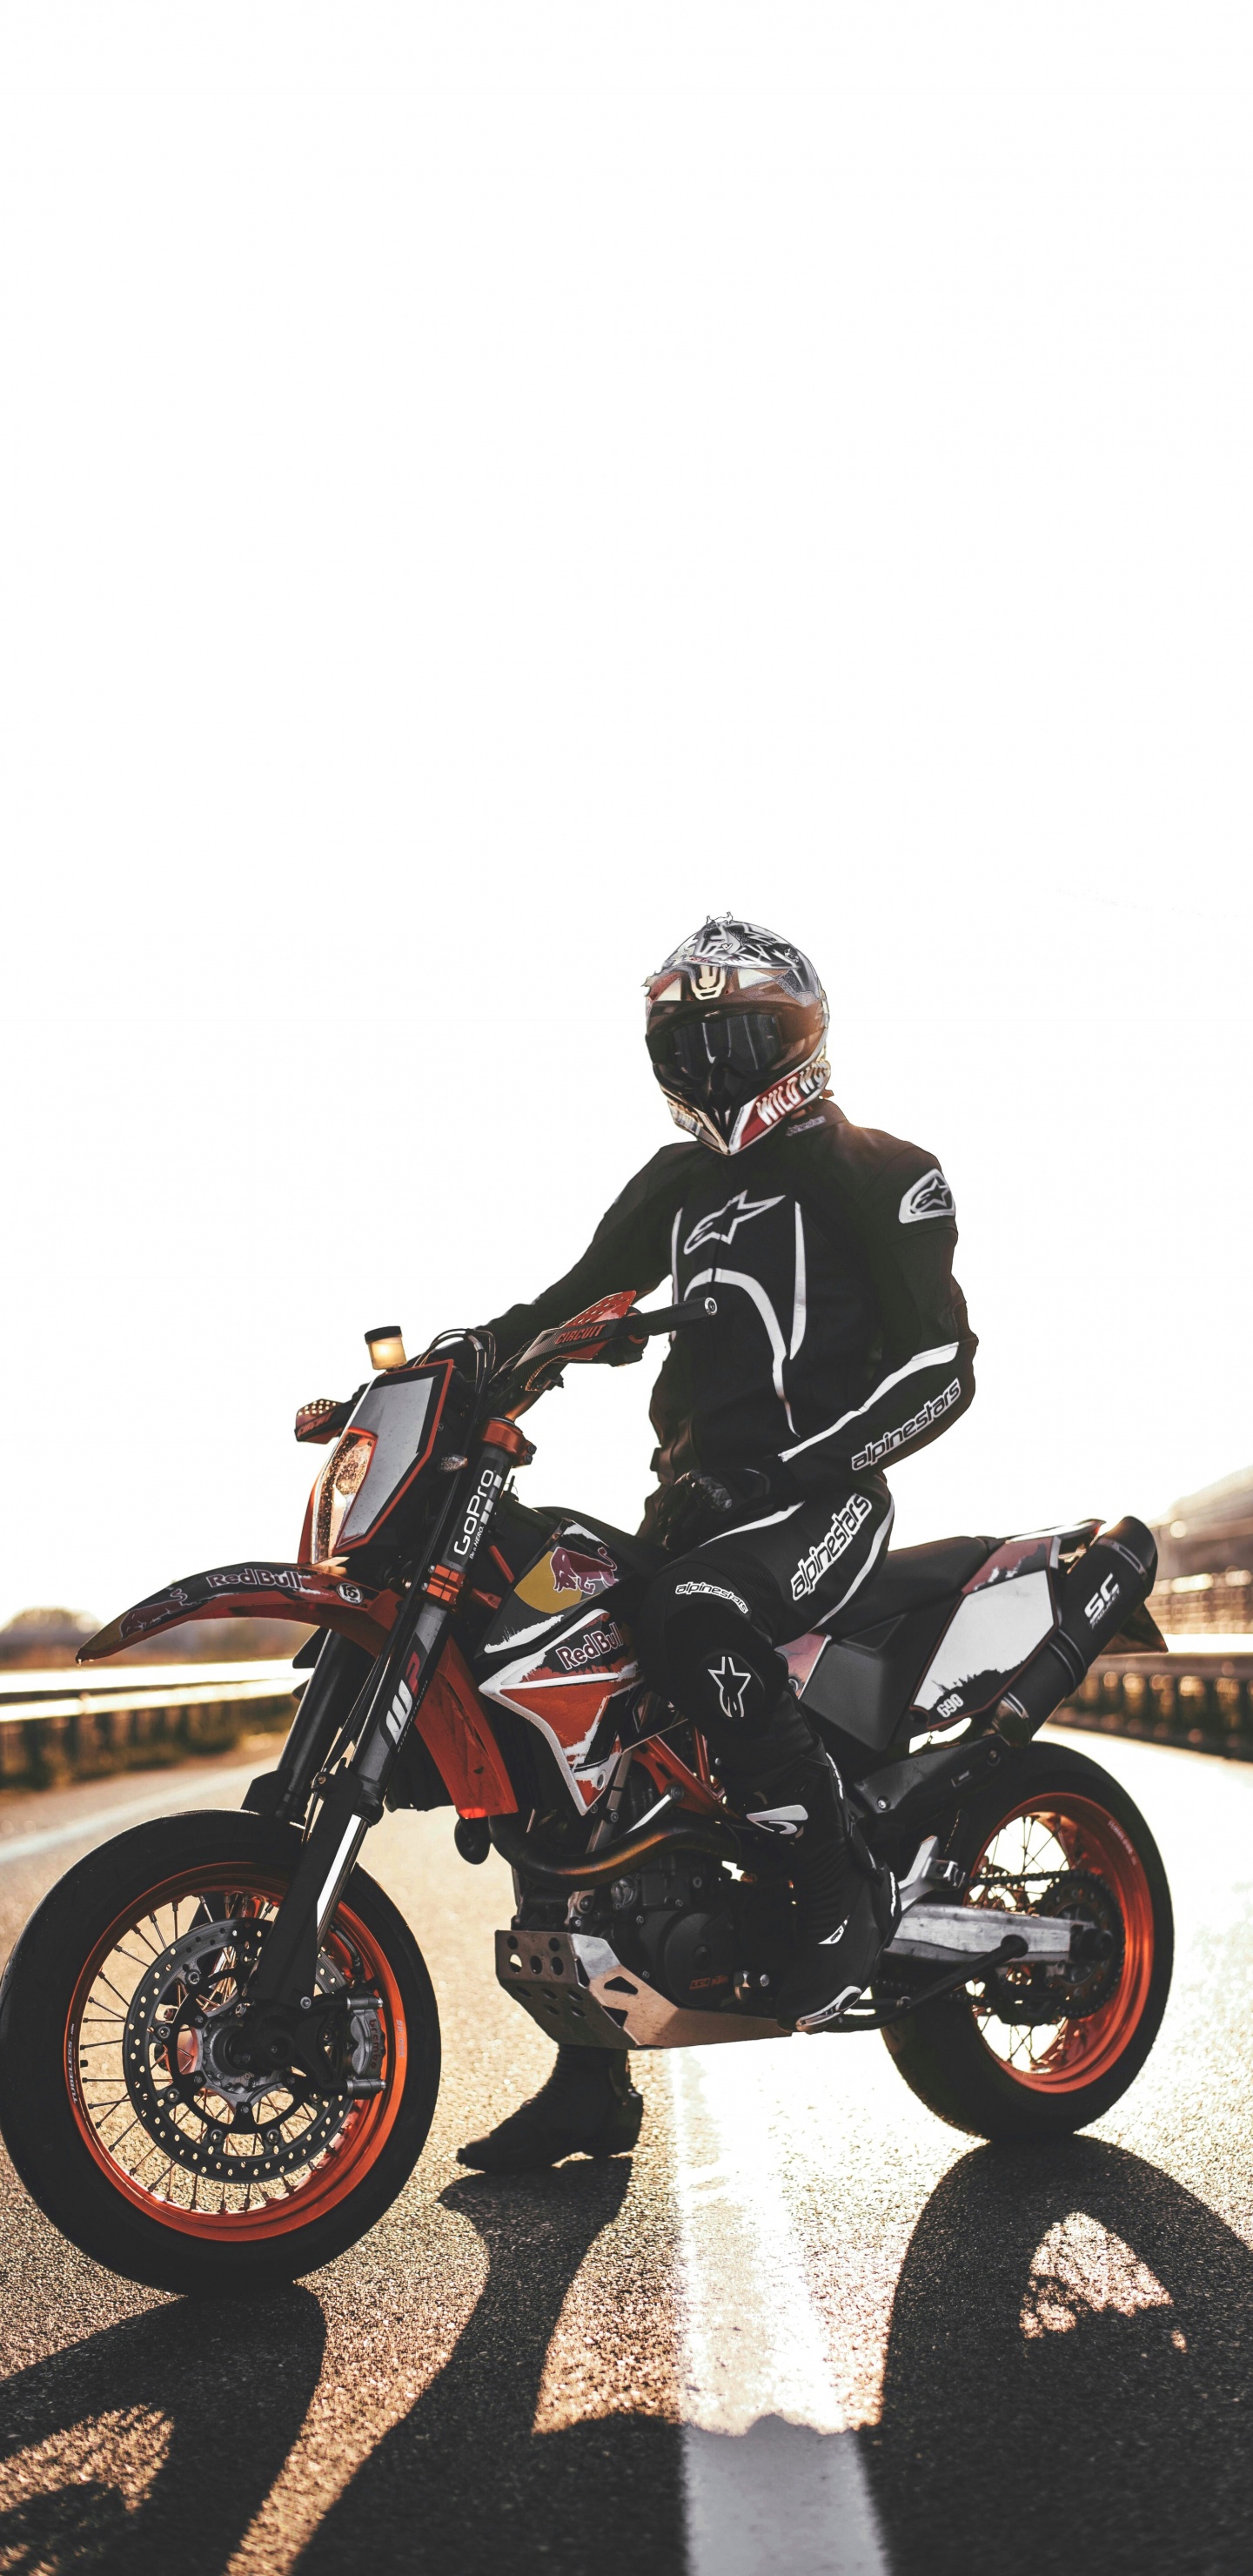 Hombre de Chaqueta Negra Montando Motocicleta. Wallpaper in 1440x2960 Resolution